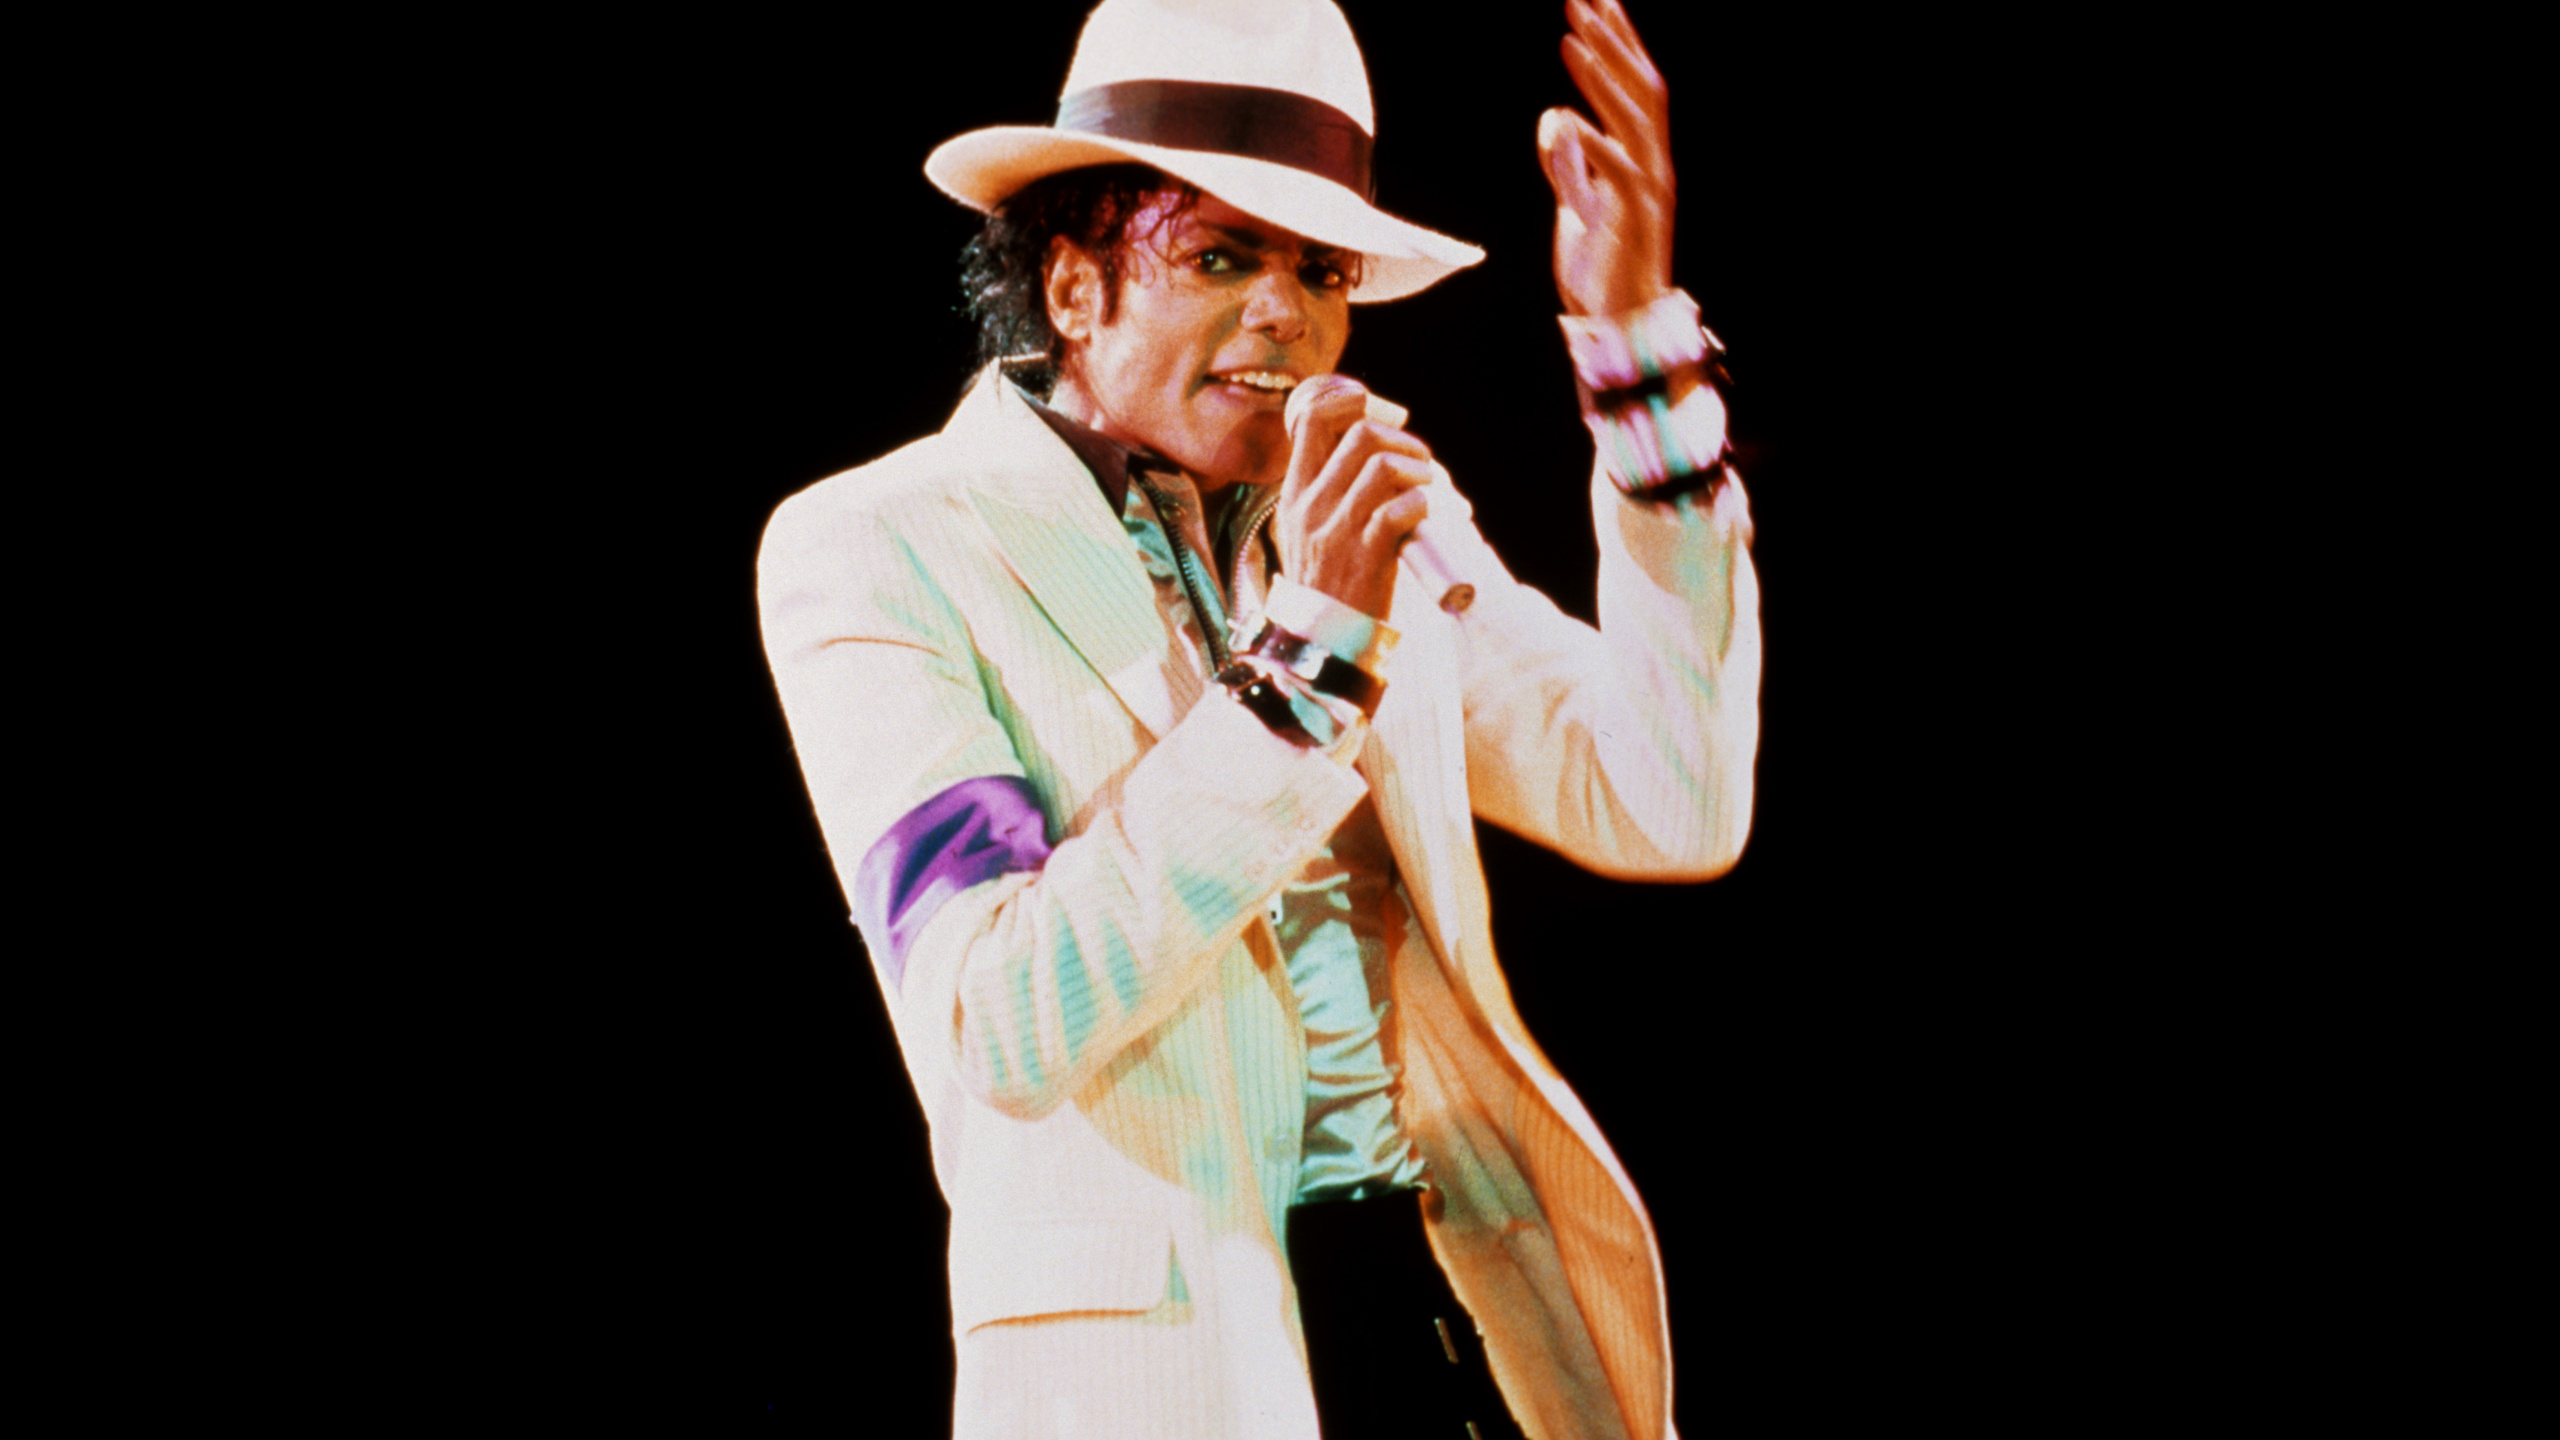 Michael Jackson, Bad, Performance, la Musique de L'artiste, Arts de la Scène. Wallpaper in 2560x1440 Resolution